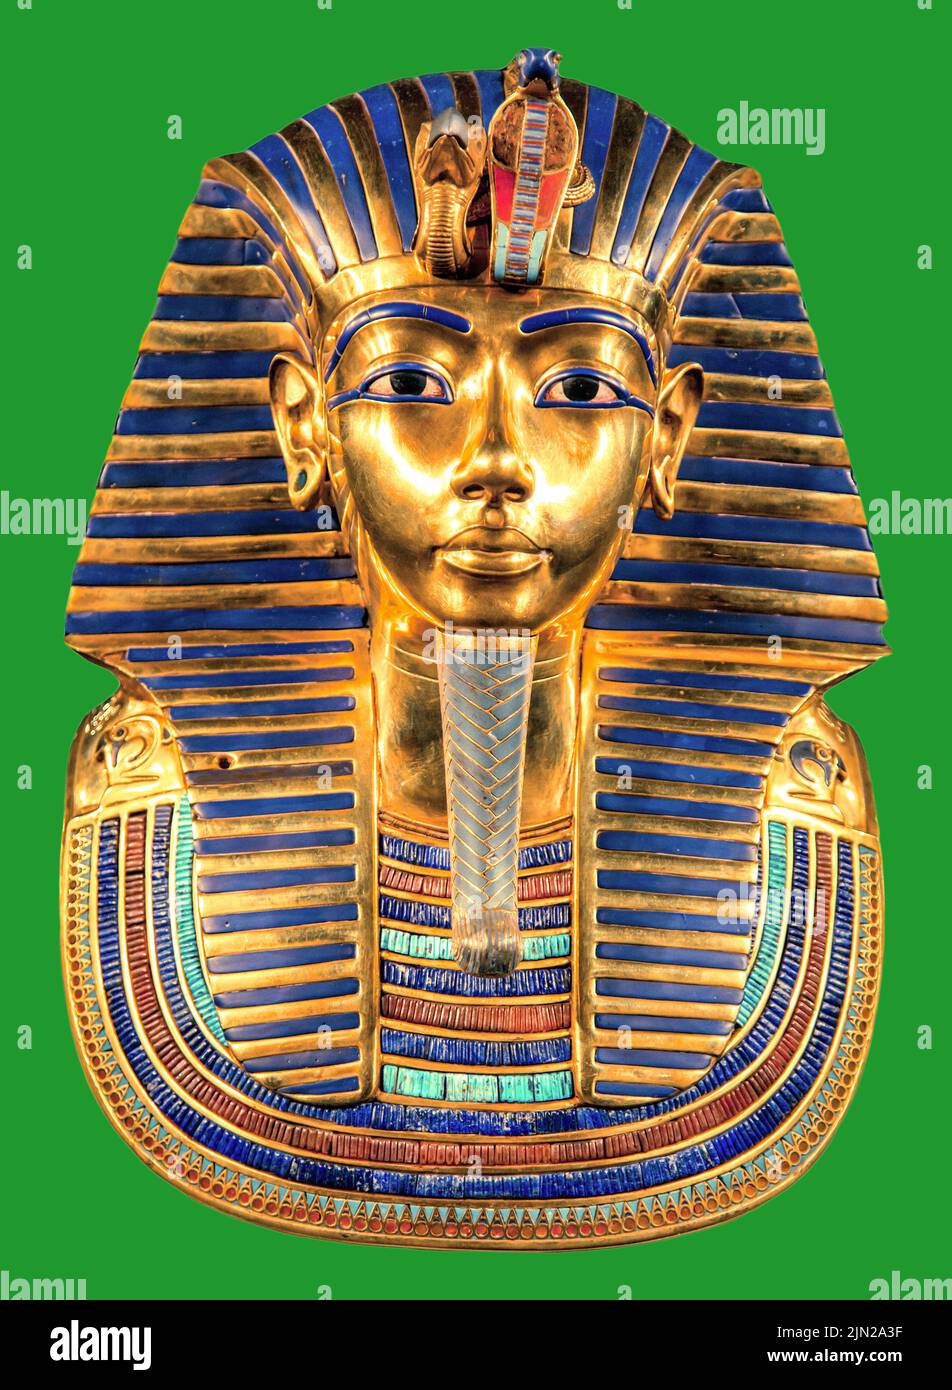 Die Totenmaske des ägyptischen pharao Tutanchamun auf grünem Hintergrund. Stockfoto